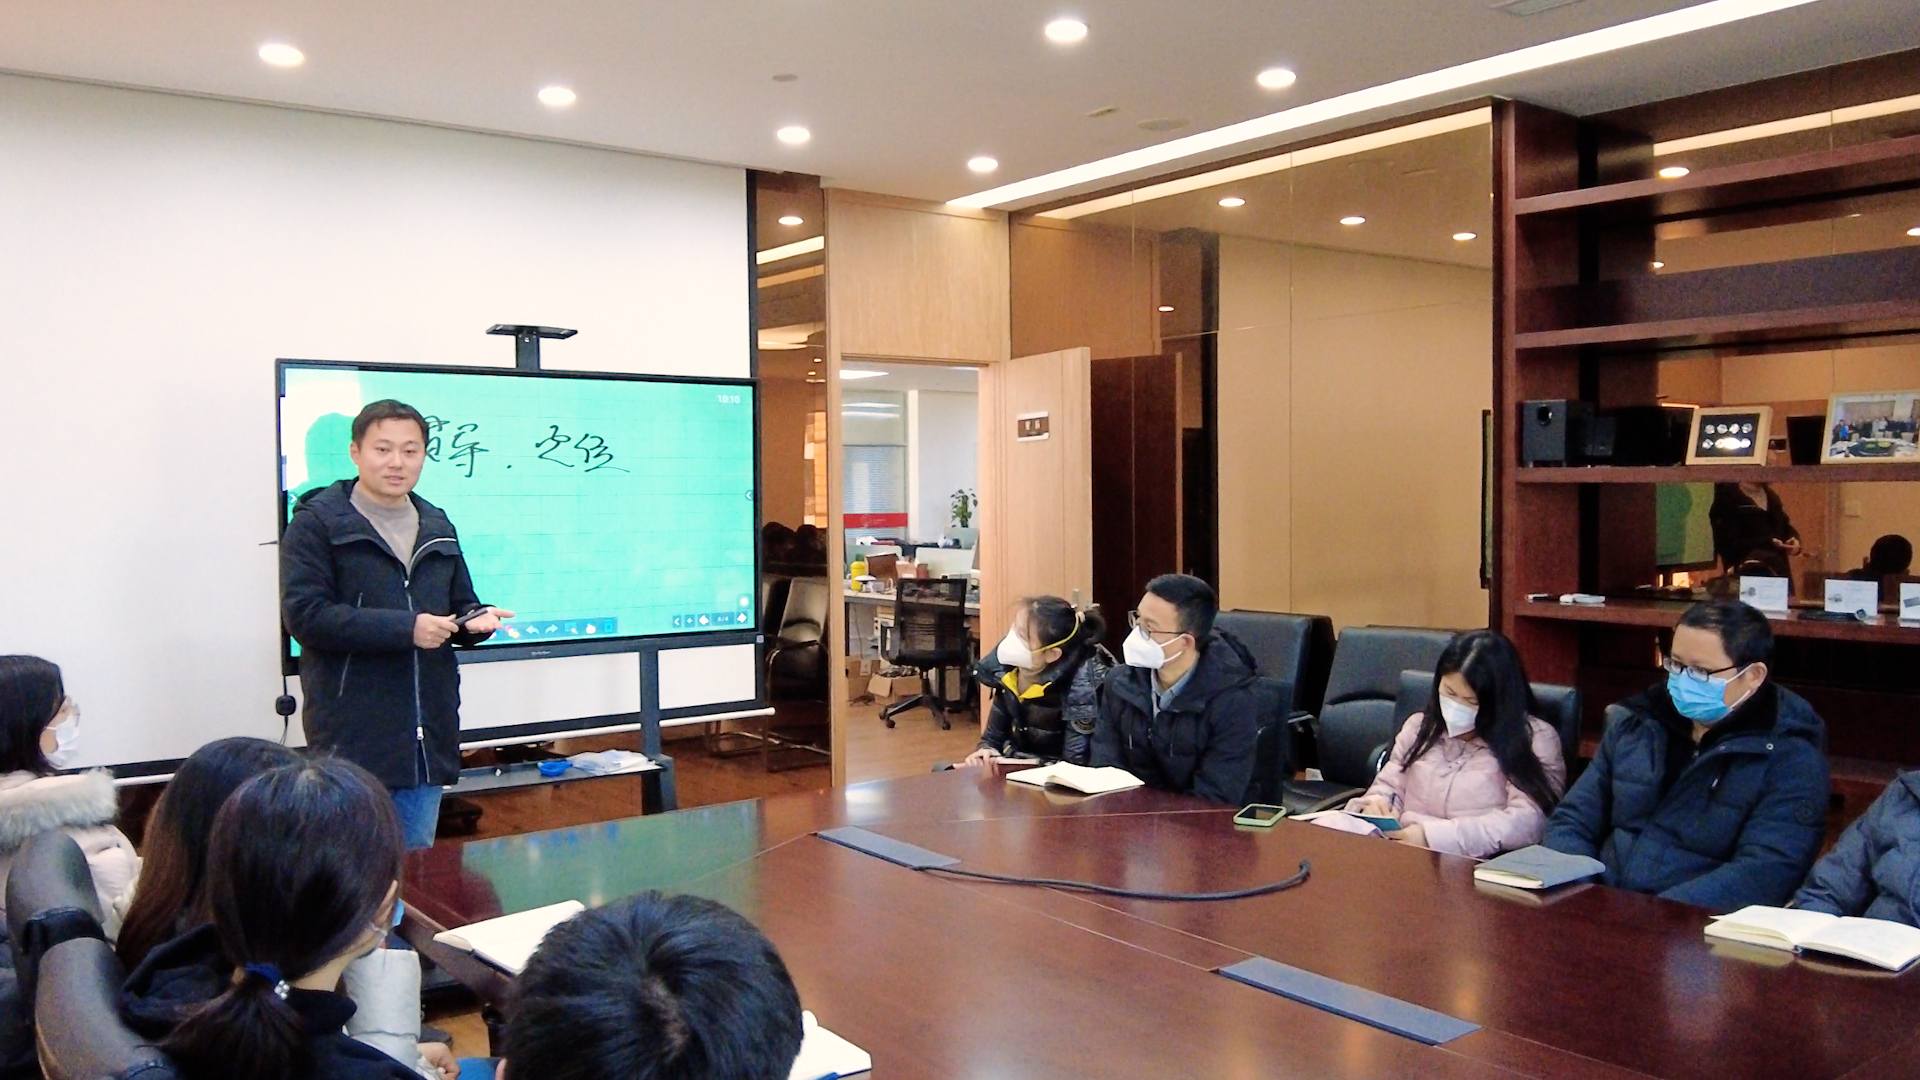 鸭博体育(中国)有限公司科技宣传片开会图片杭总年会议室.jpg